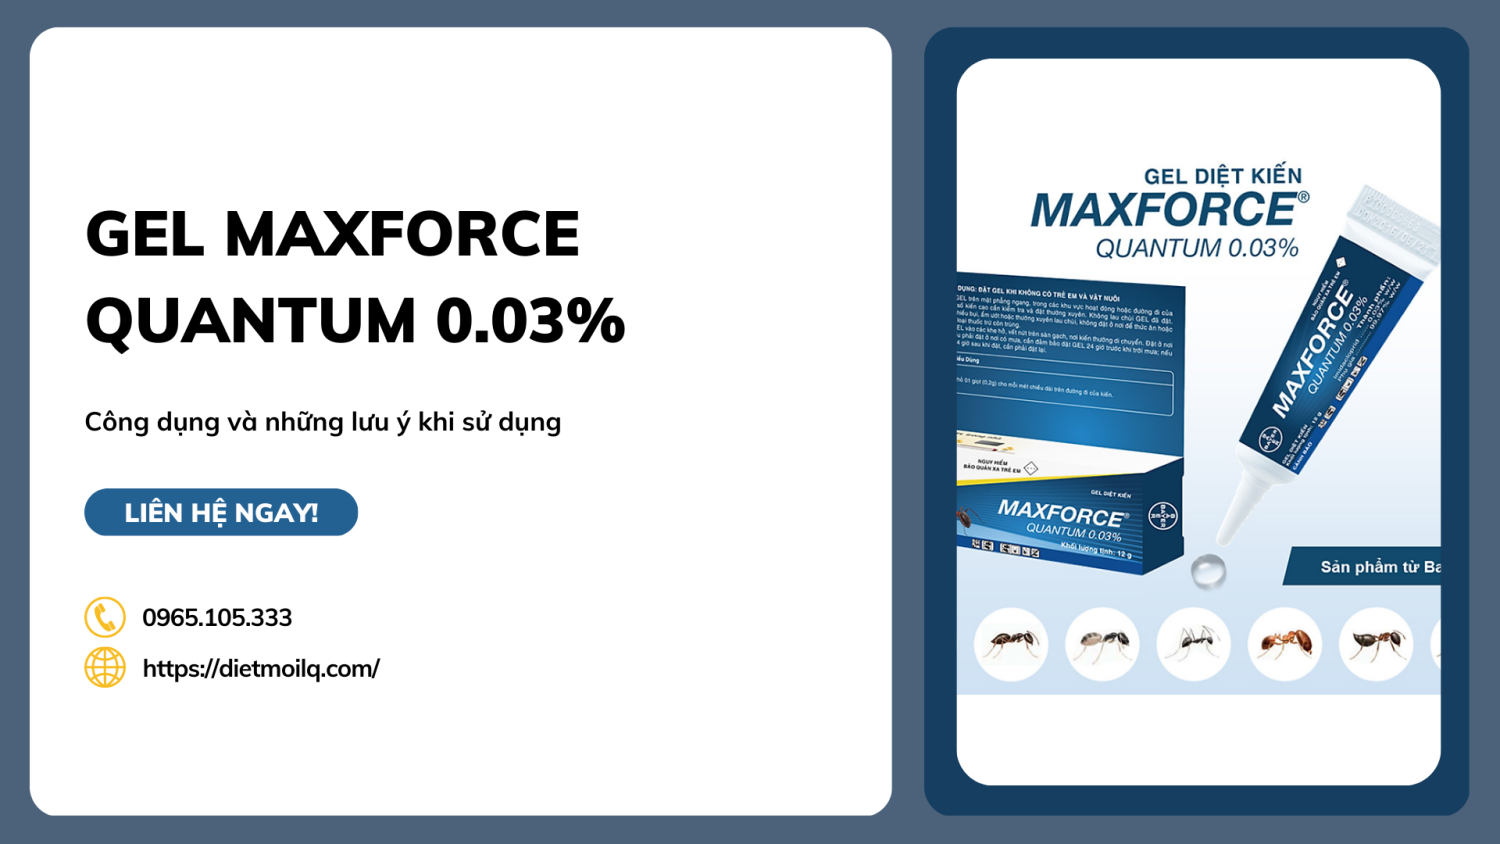 Diệt kiến dạng Gel Maxforce Quantum 0.03% - Công dụng và những lưu ý khi sử dụng